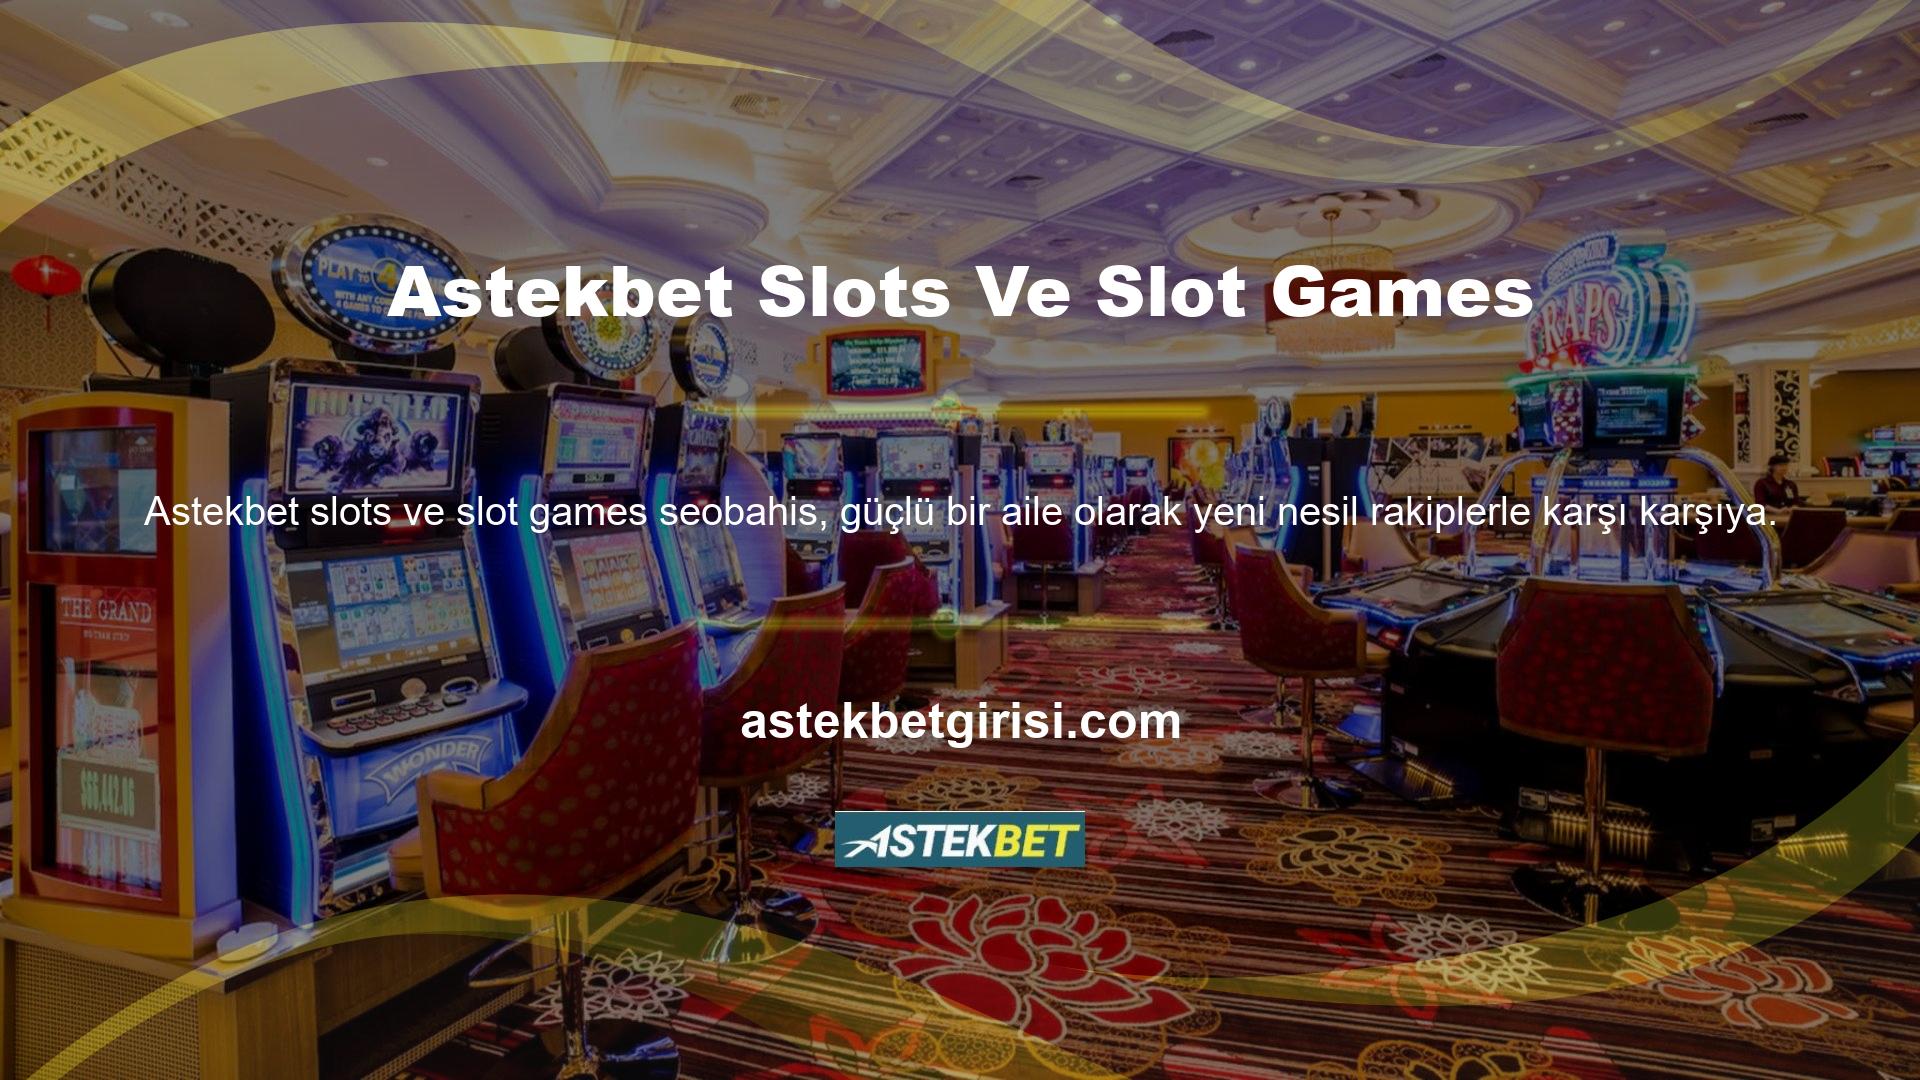 Astekbet slotları ve slotları bunu en iyi ücretli slotlar ve slot oyunlarıyla açıkça göstermektedir